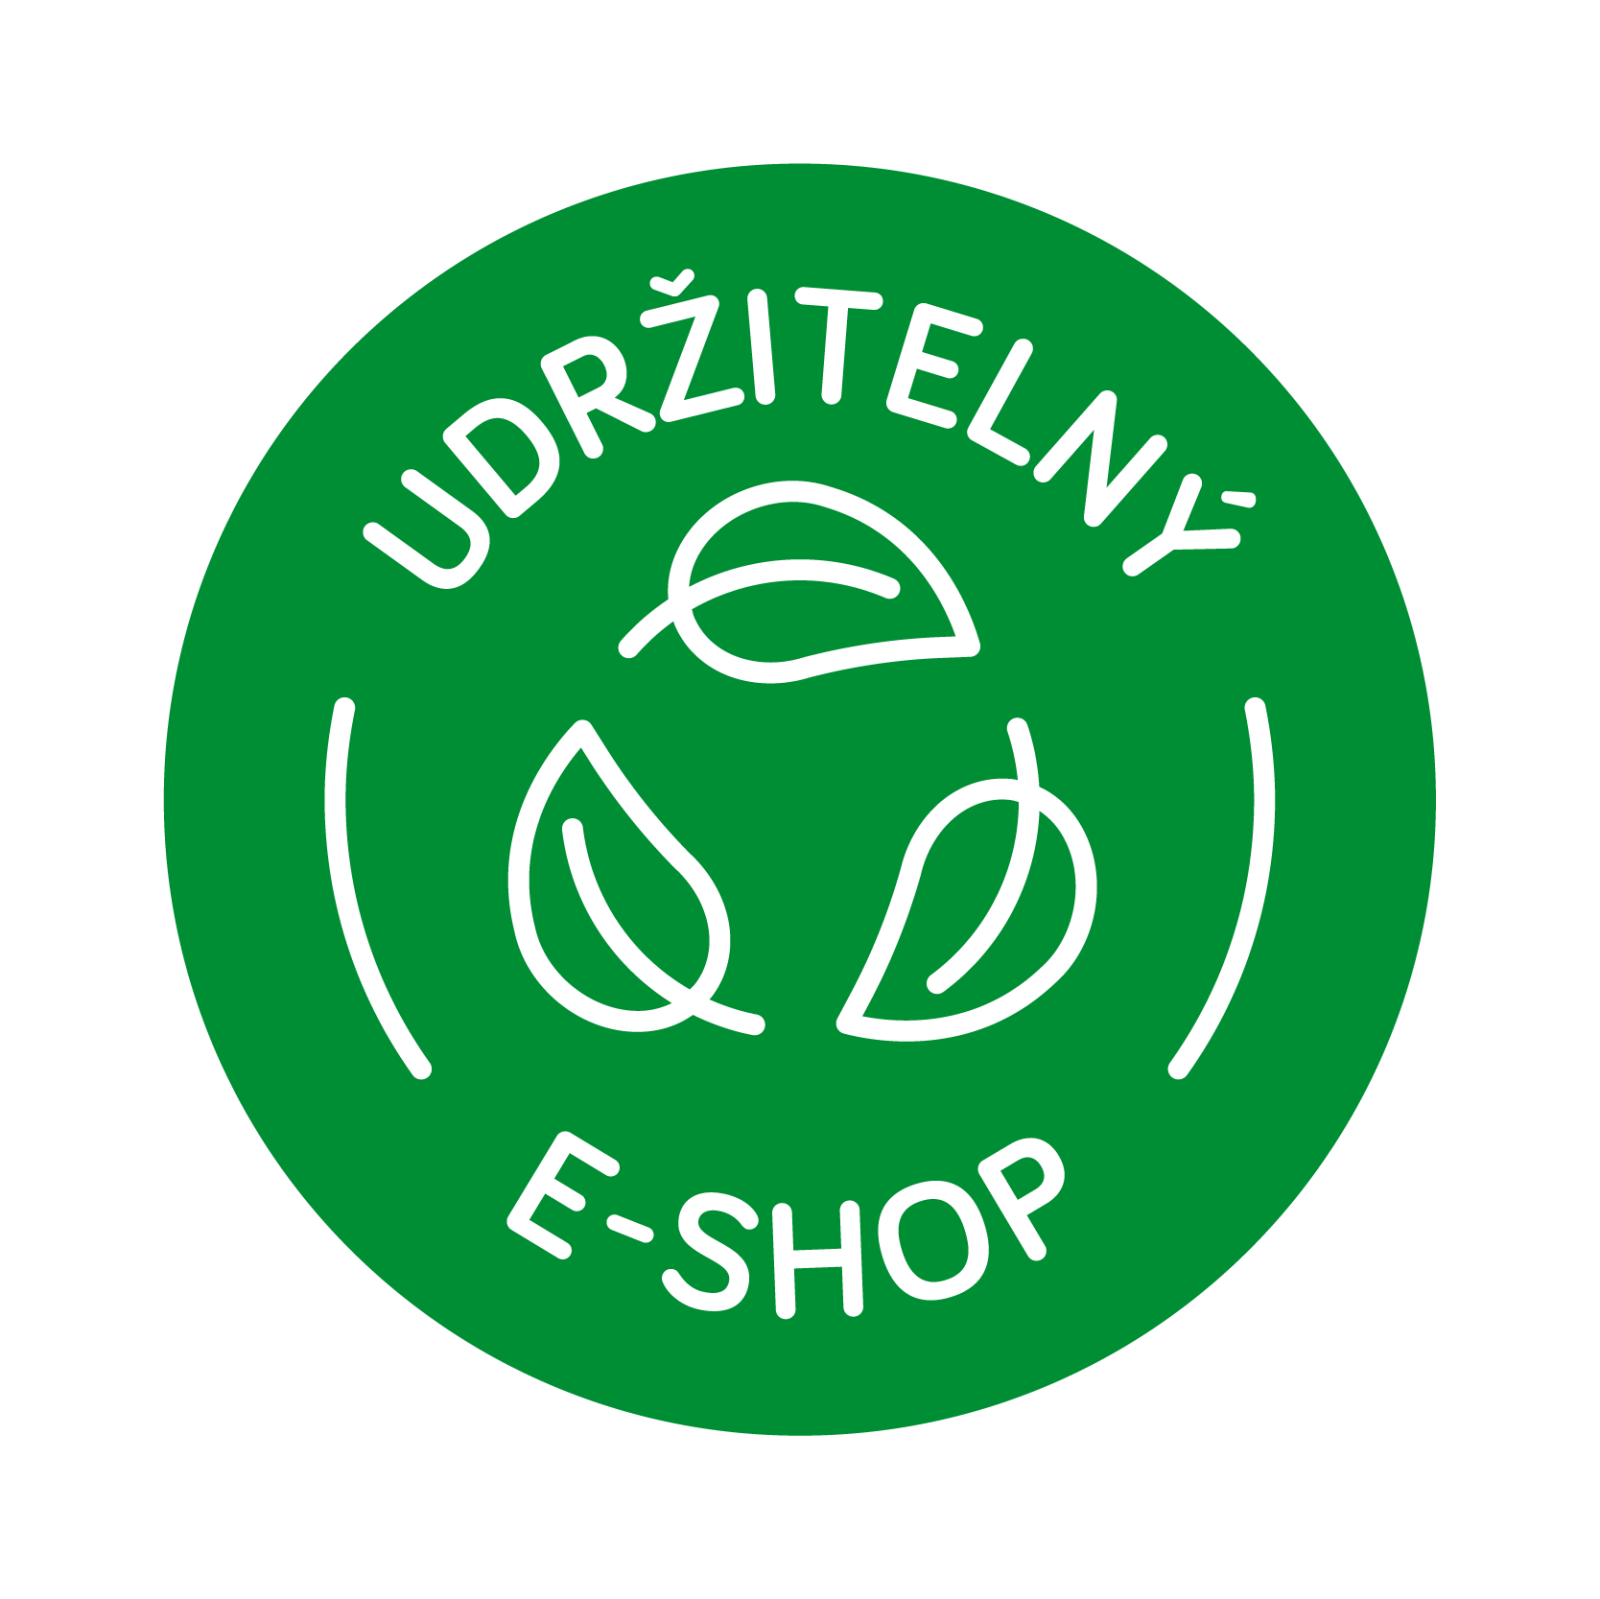 udržitelný eshop logo